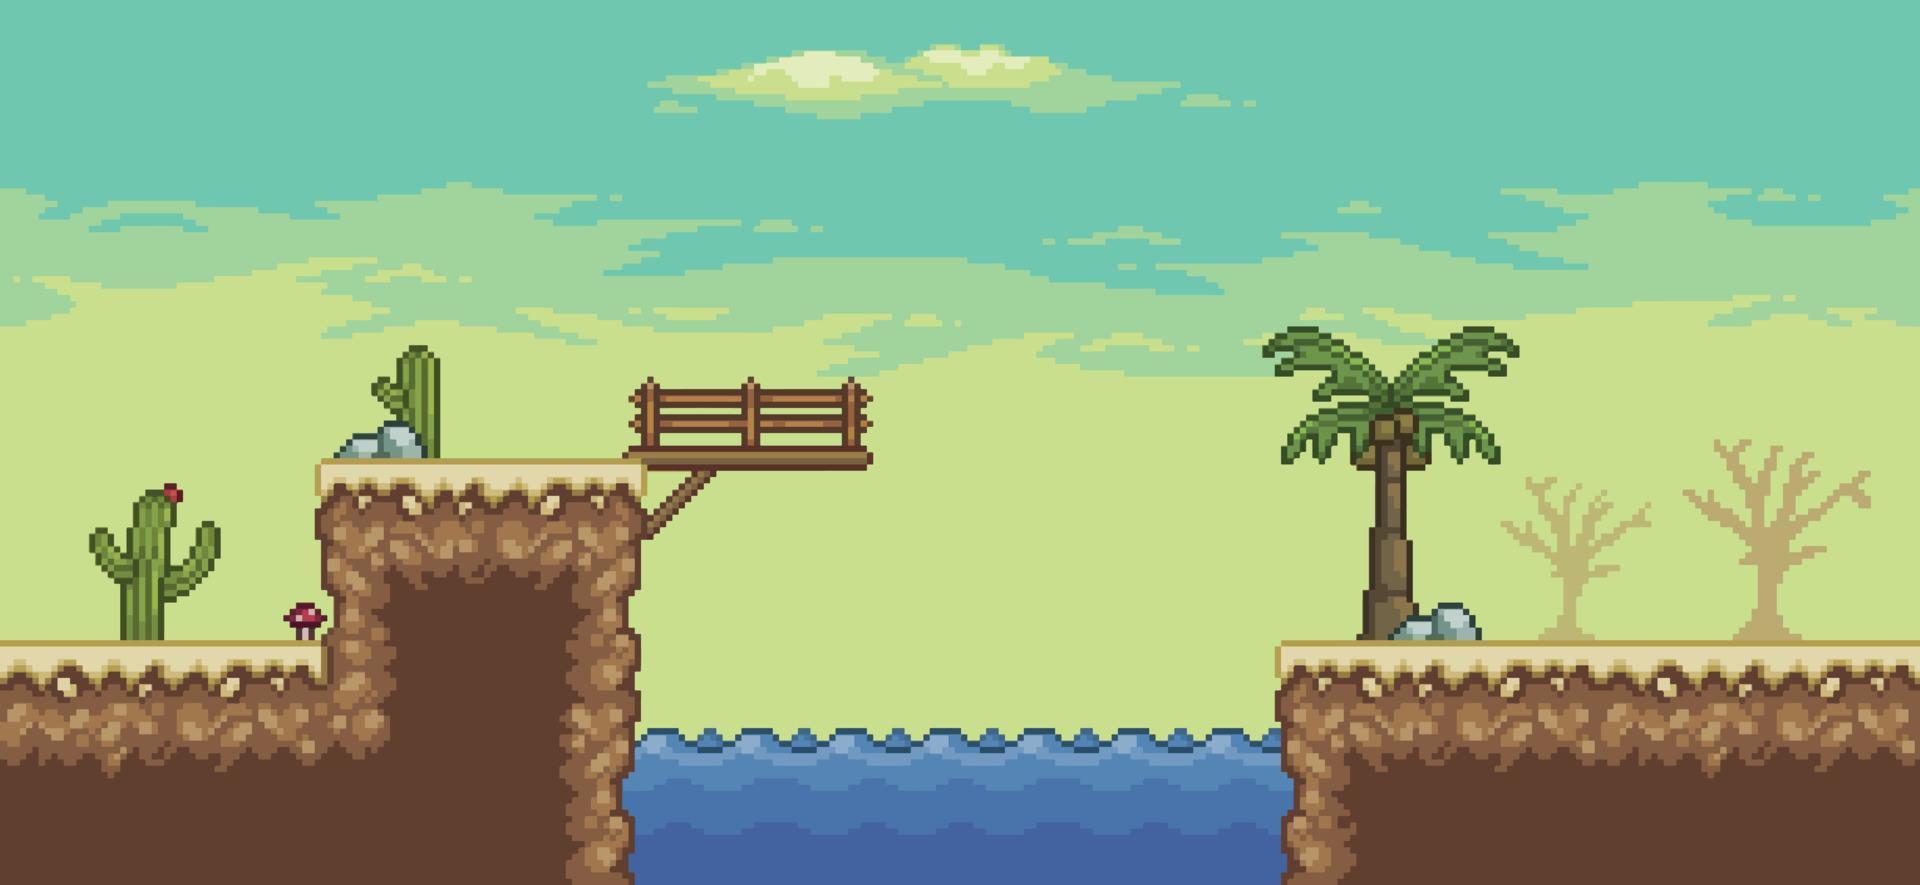 scena di gioco del deserto di pixel art con palme, oasi, cactus, ponte sullo sfondo del paesaggio a 8 bit vettore